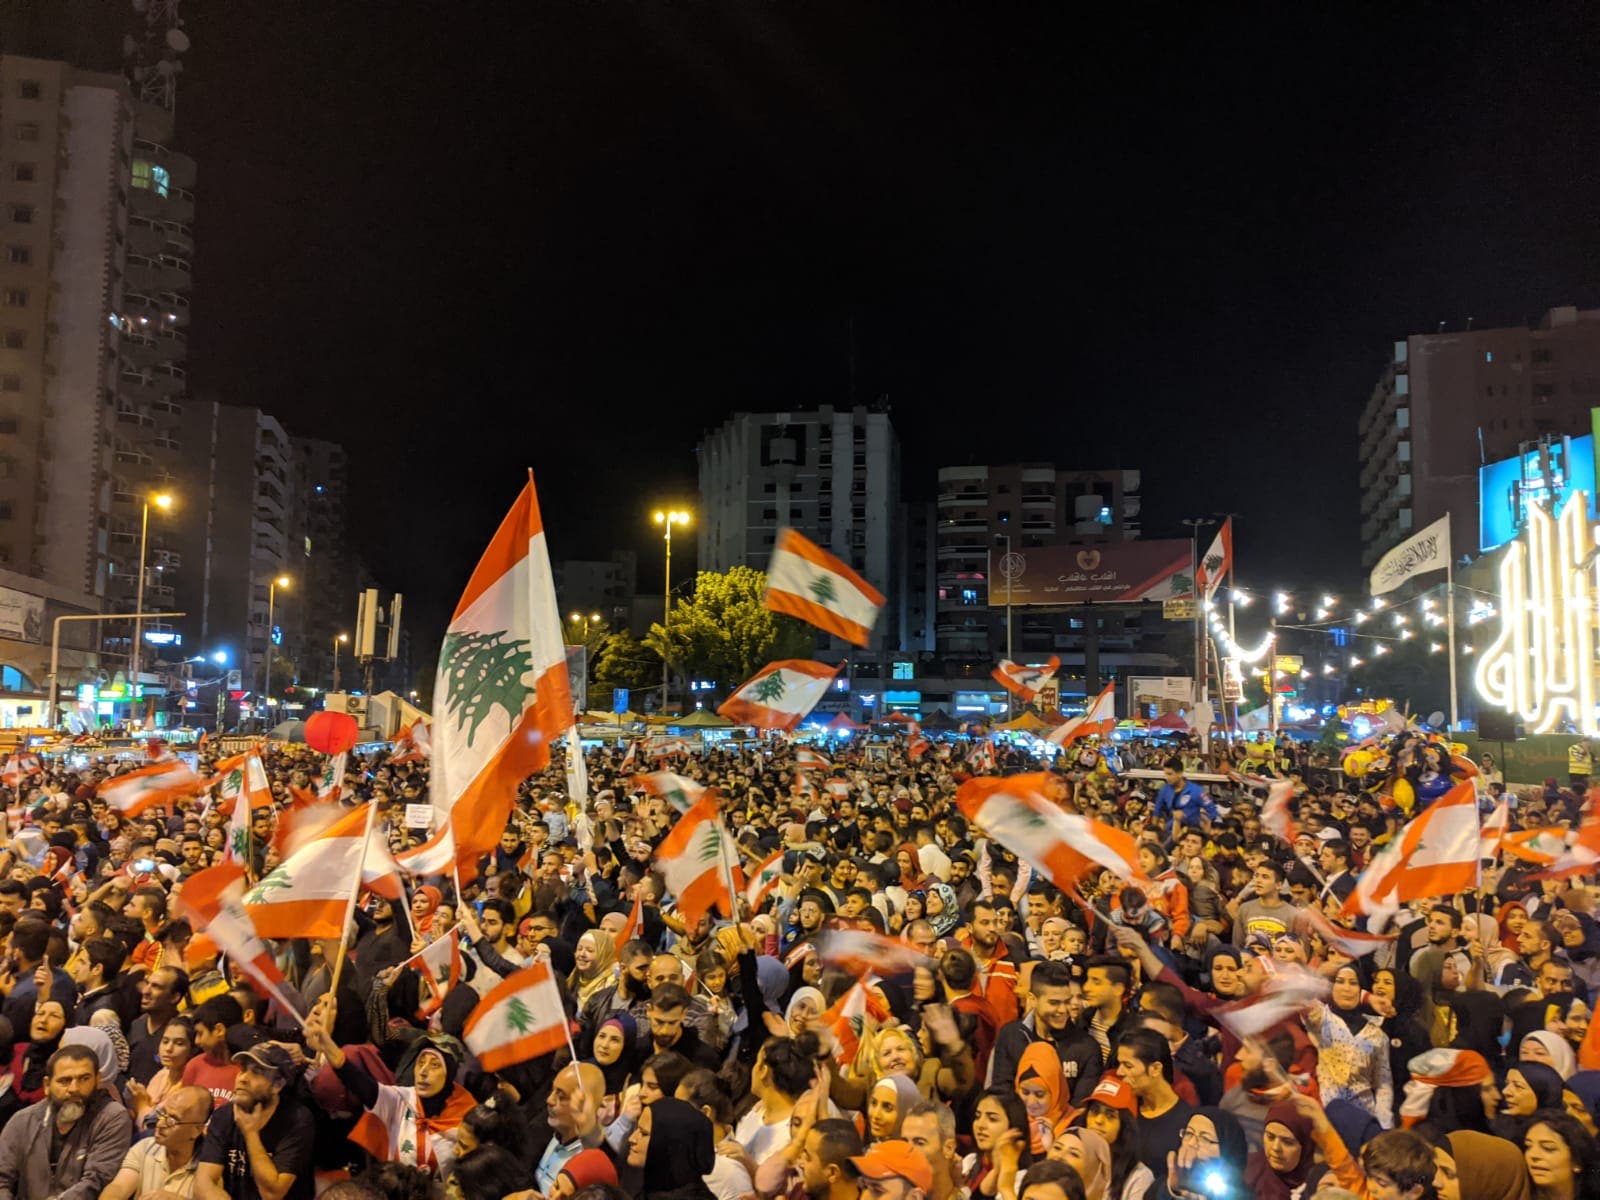 Tripoli protests, taken by Emily Lewis on November 17, 2019.(Emily Lewis)